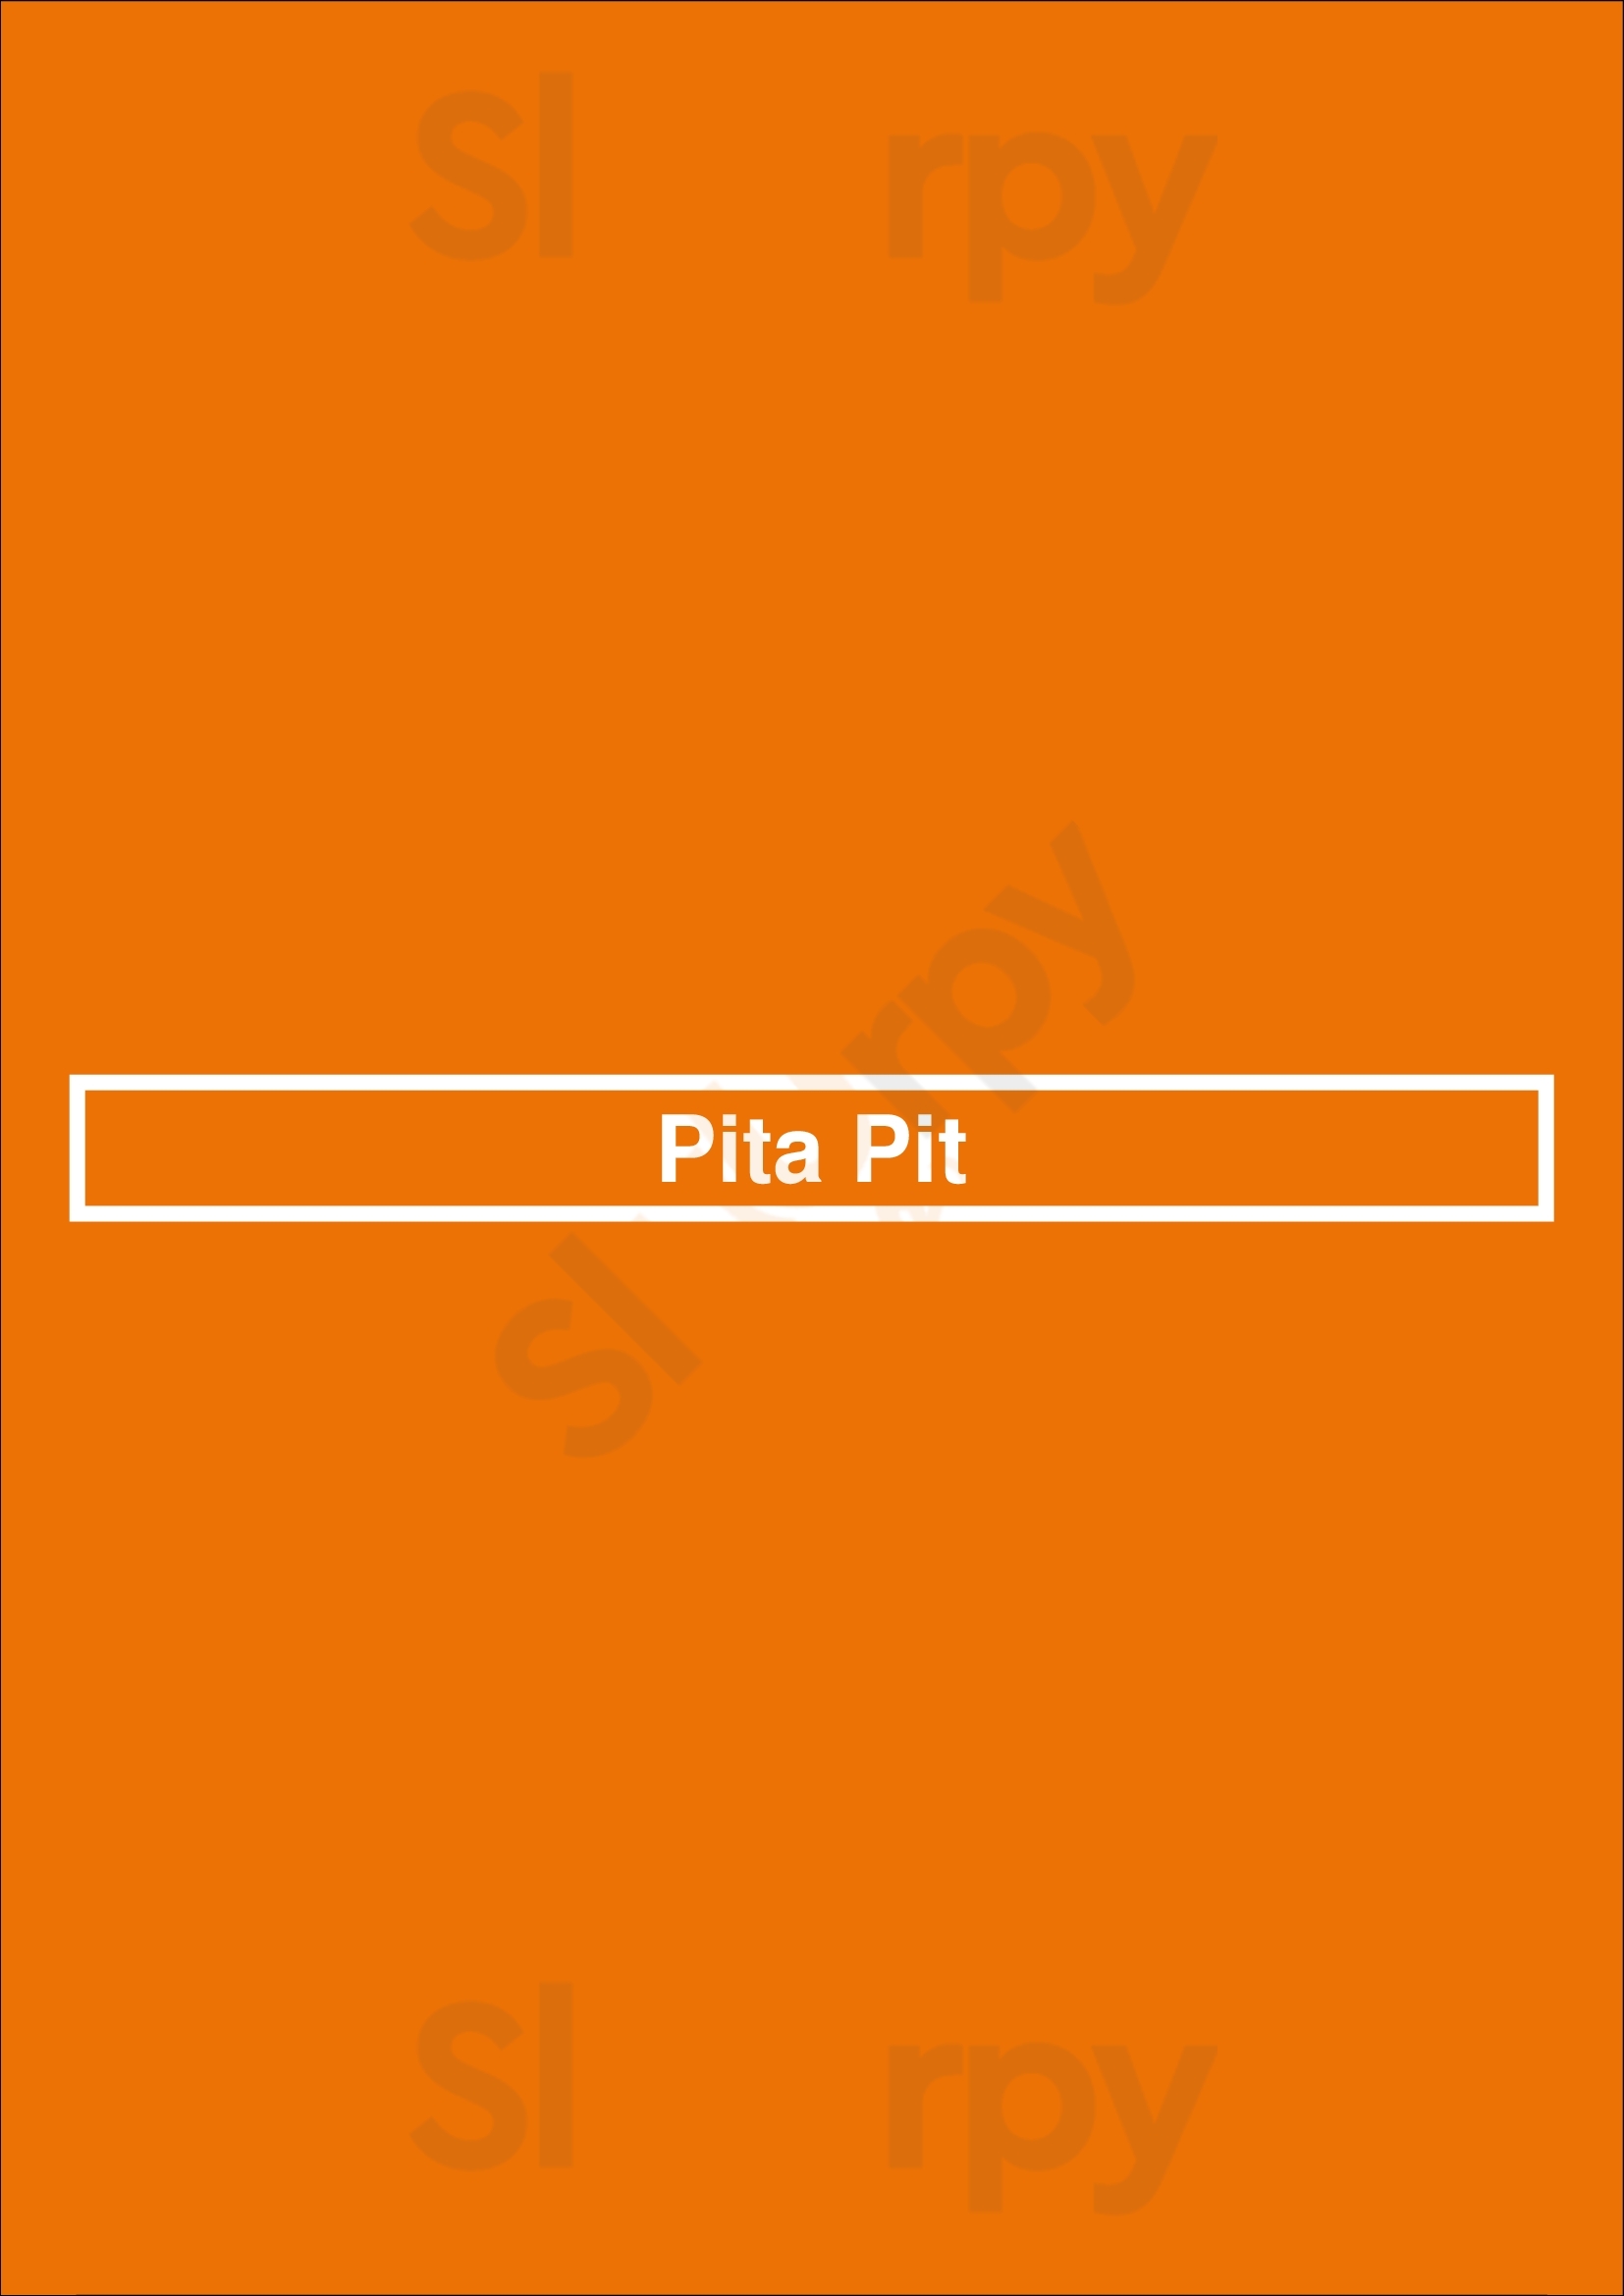 Pita Pit Abbotsford Menu - 1